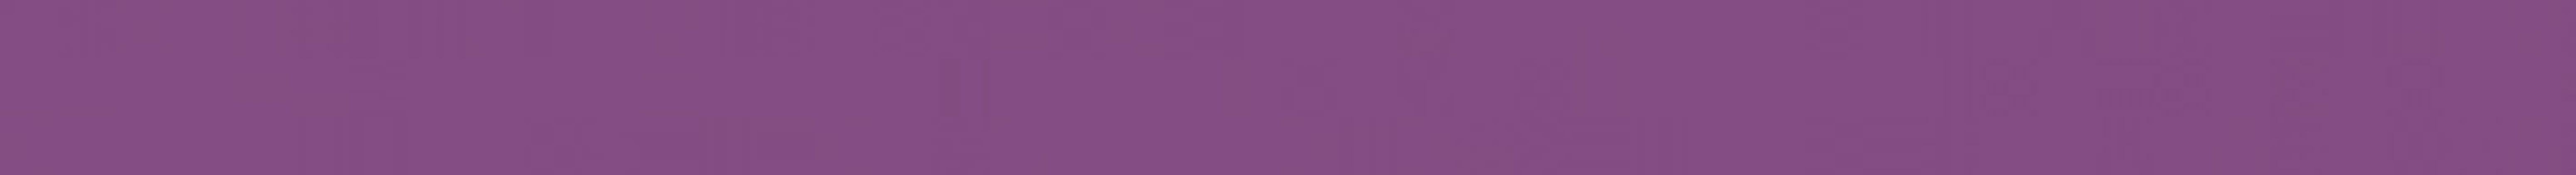 Monocolor Бордюр стеклянный Ral 4008 (фиолетовый) 2x30